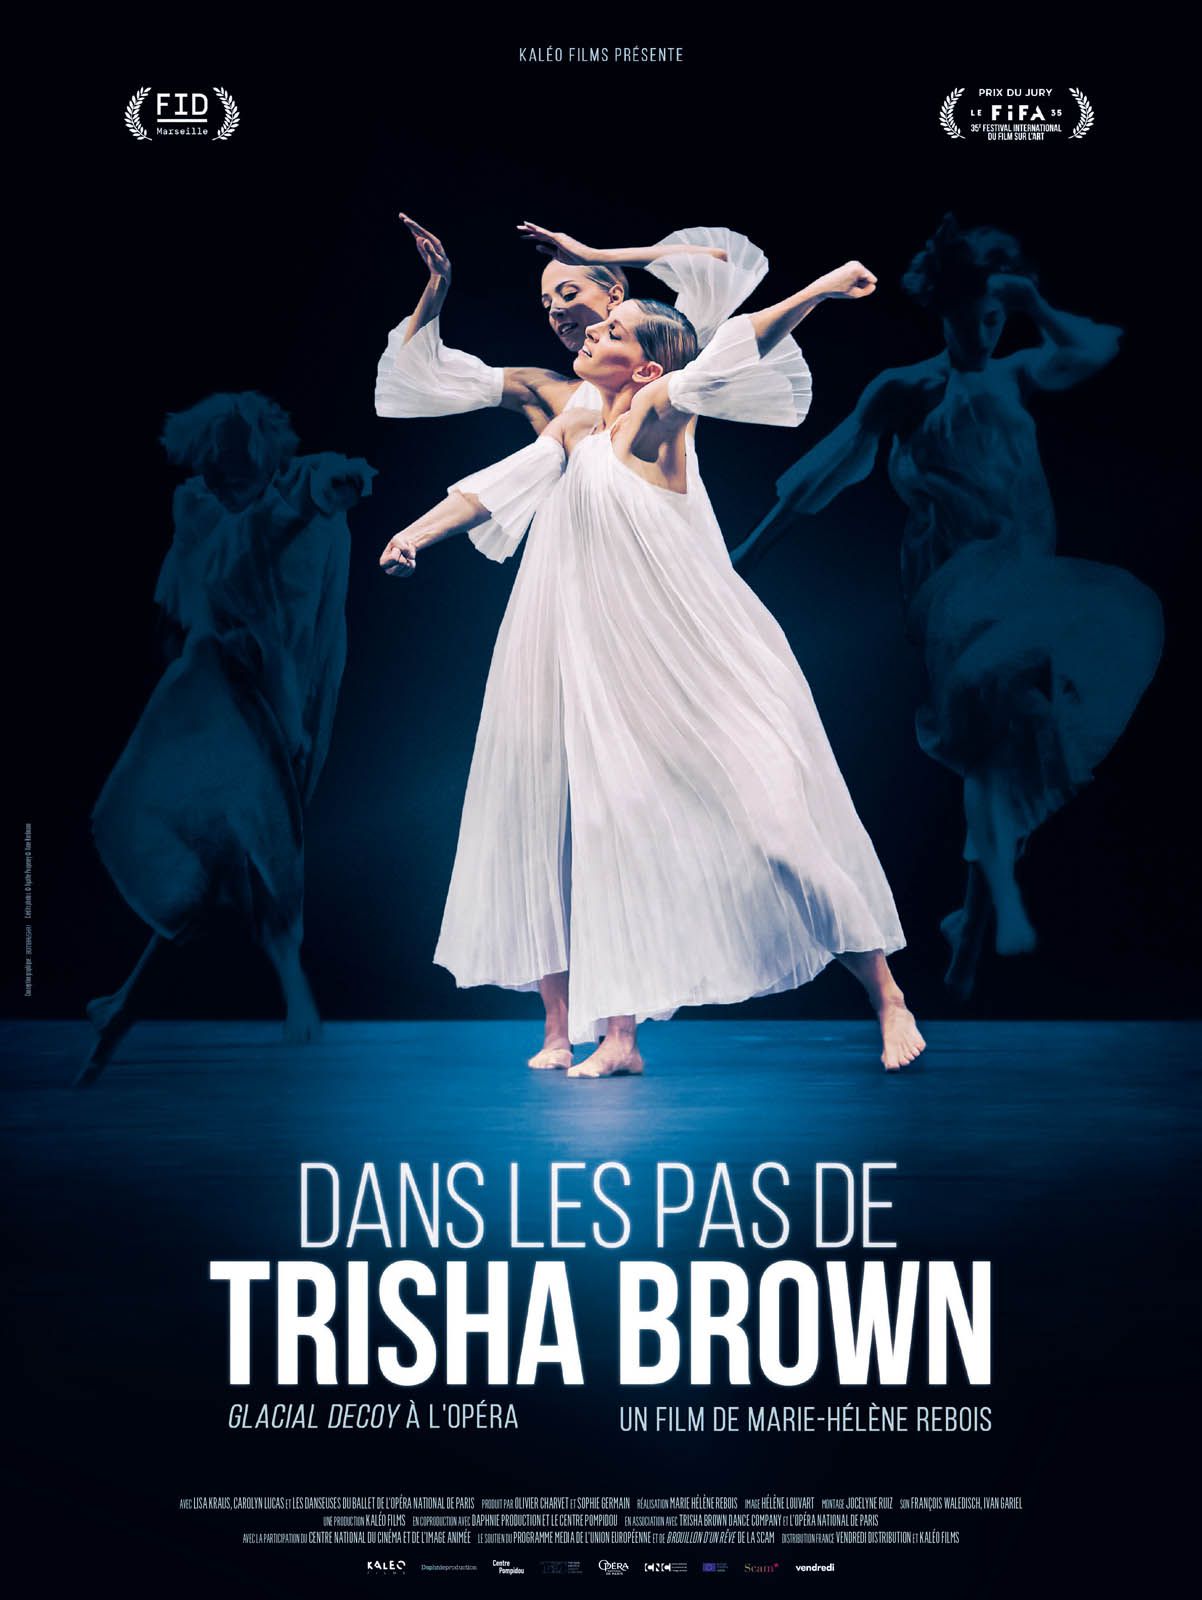 Dans les pas de Trisha Brown - Glacial Decoy à l'Opéra - Documentaire (2017) streaming VF gratuit complet